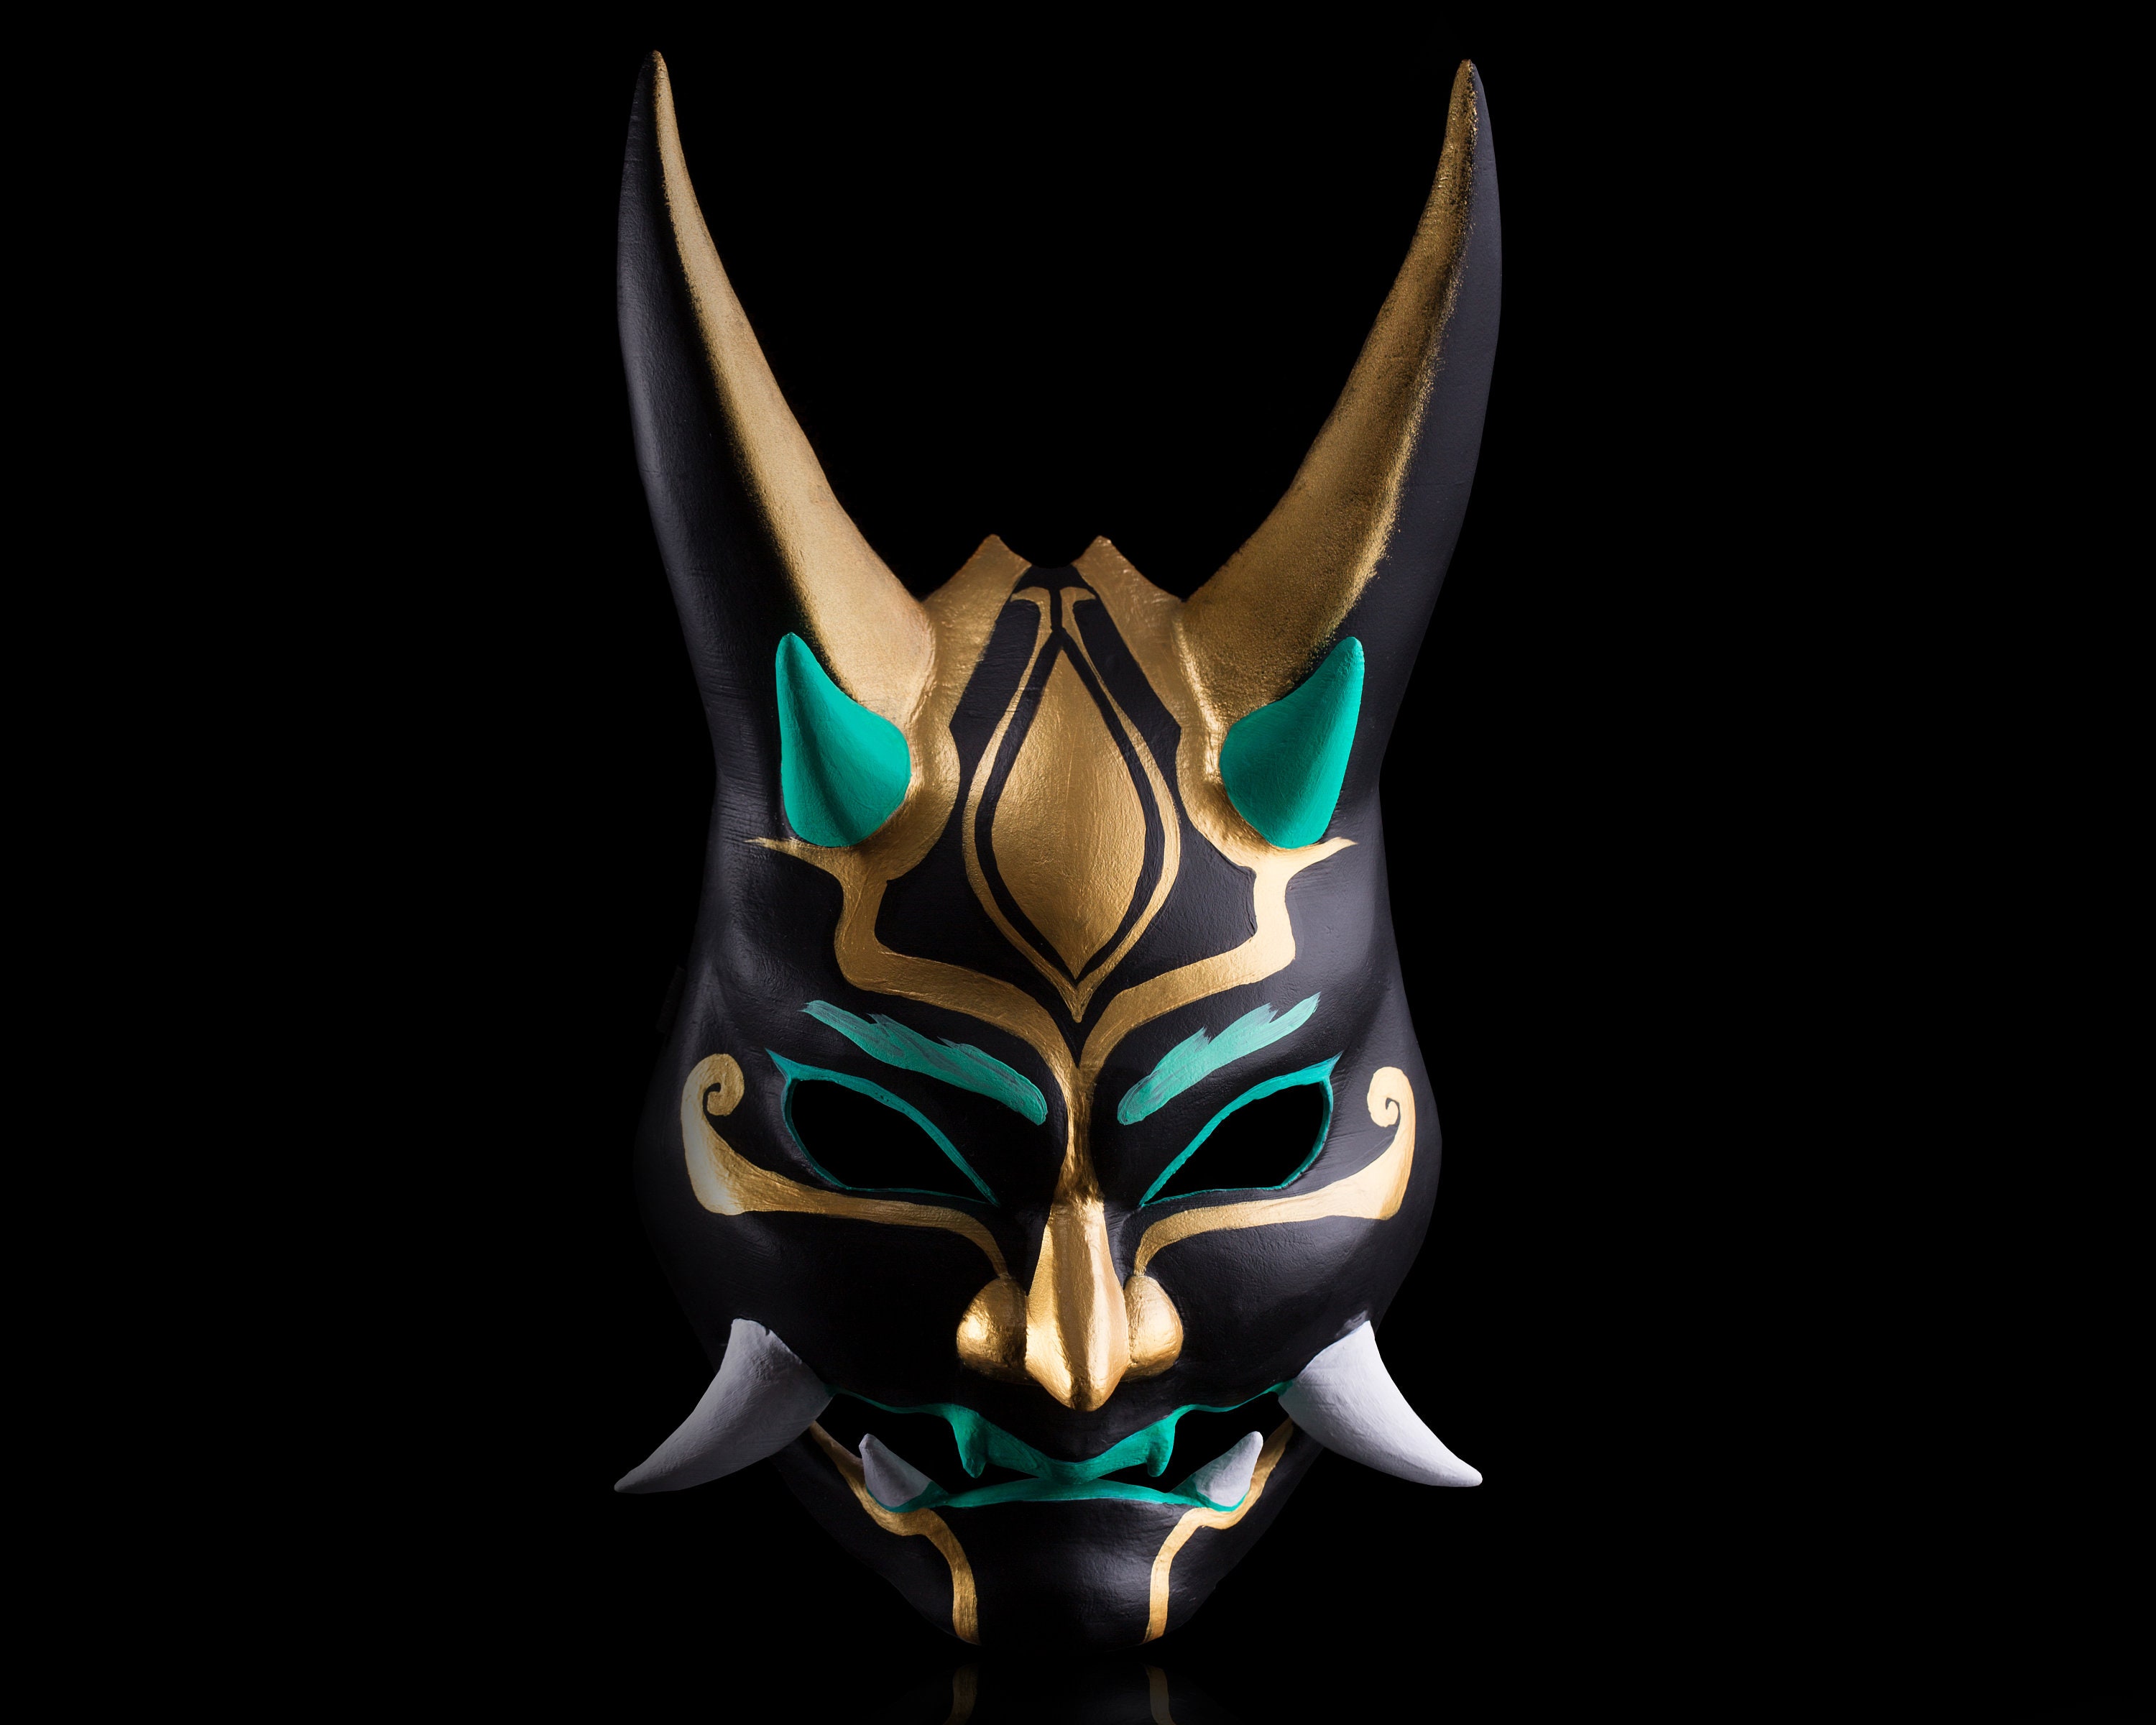 Xiao Genshin Impact Mask cosplay demon mask plastic | Etsy